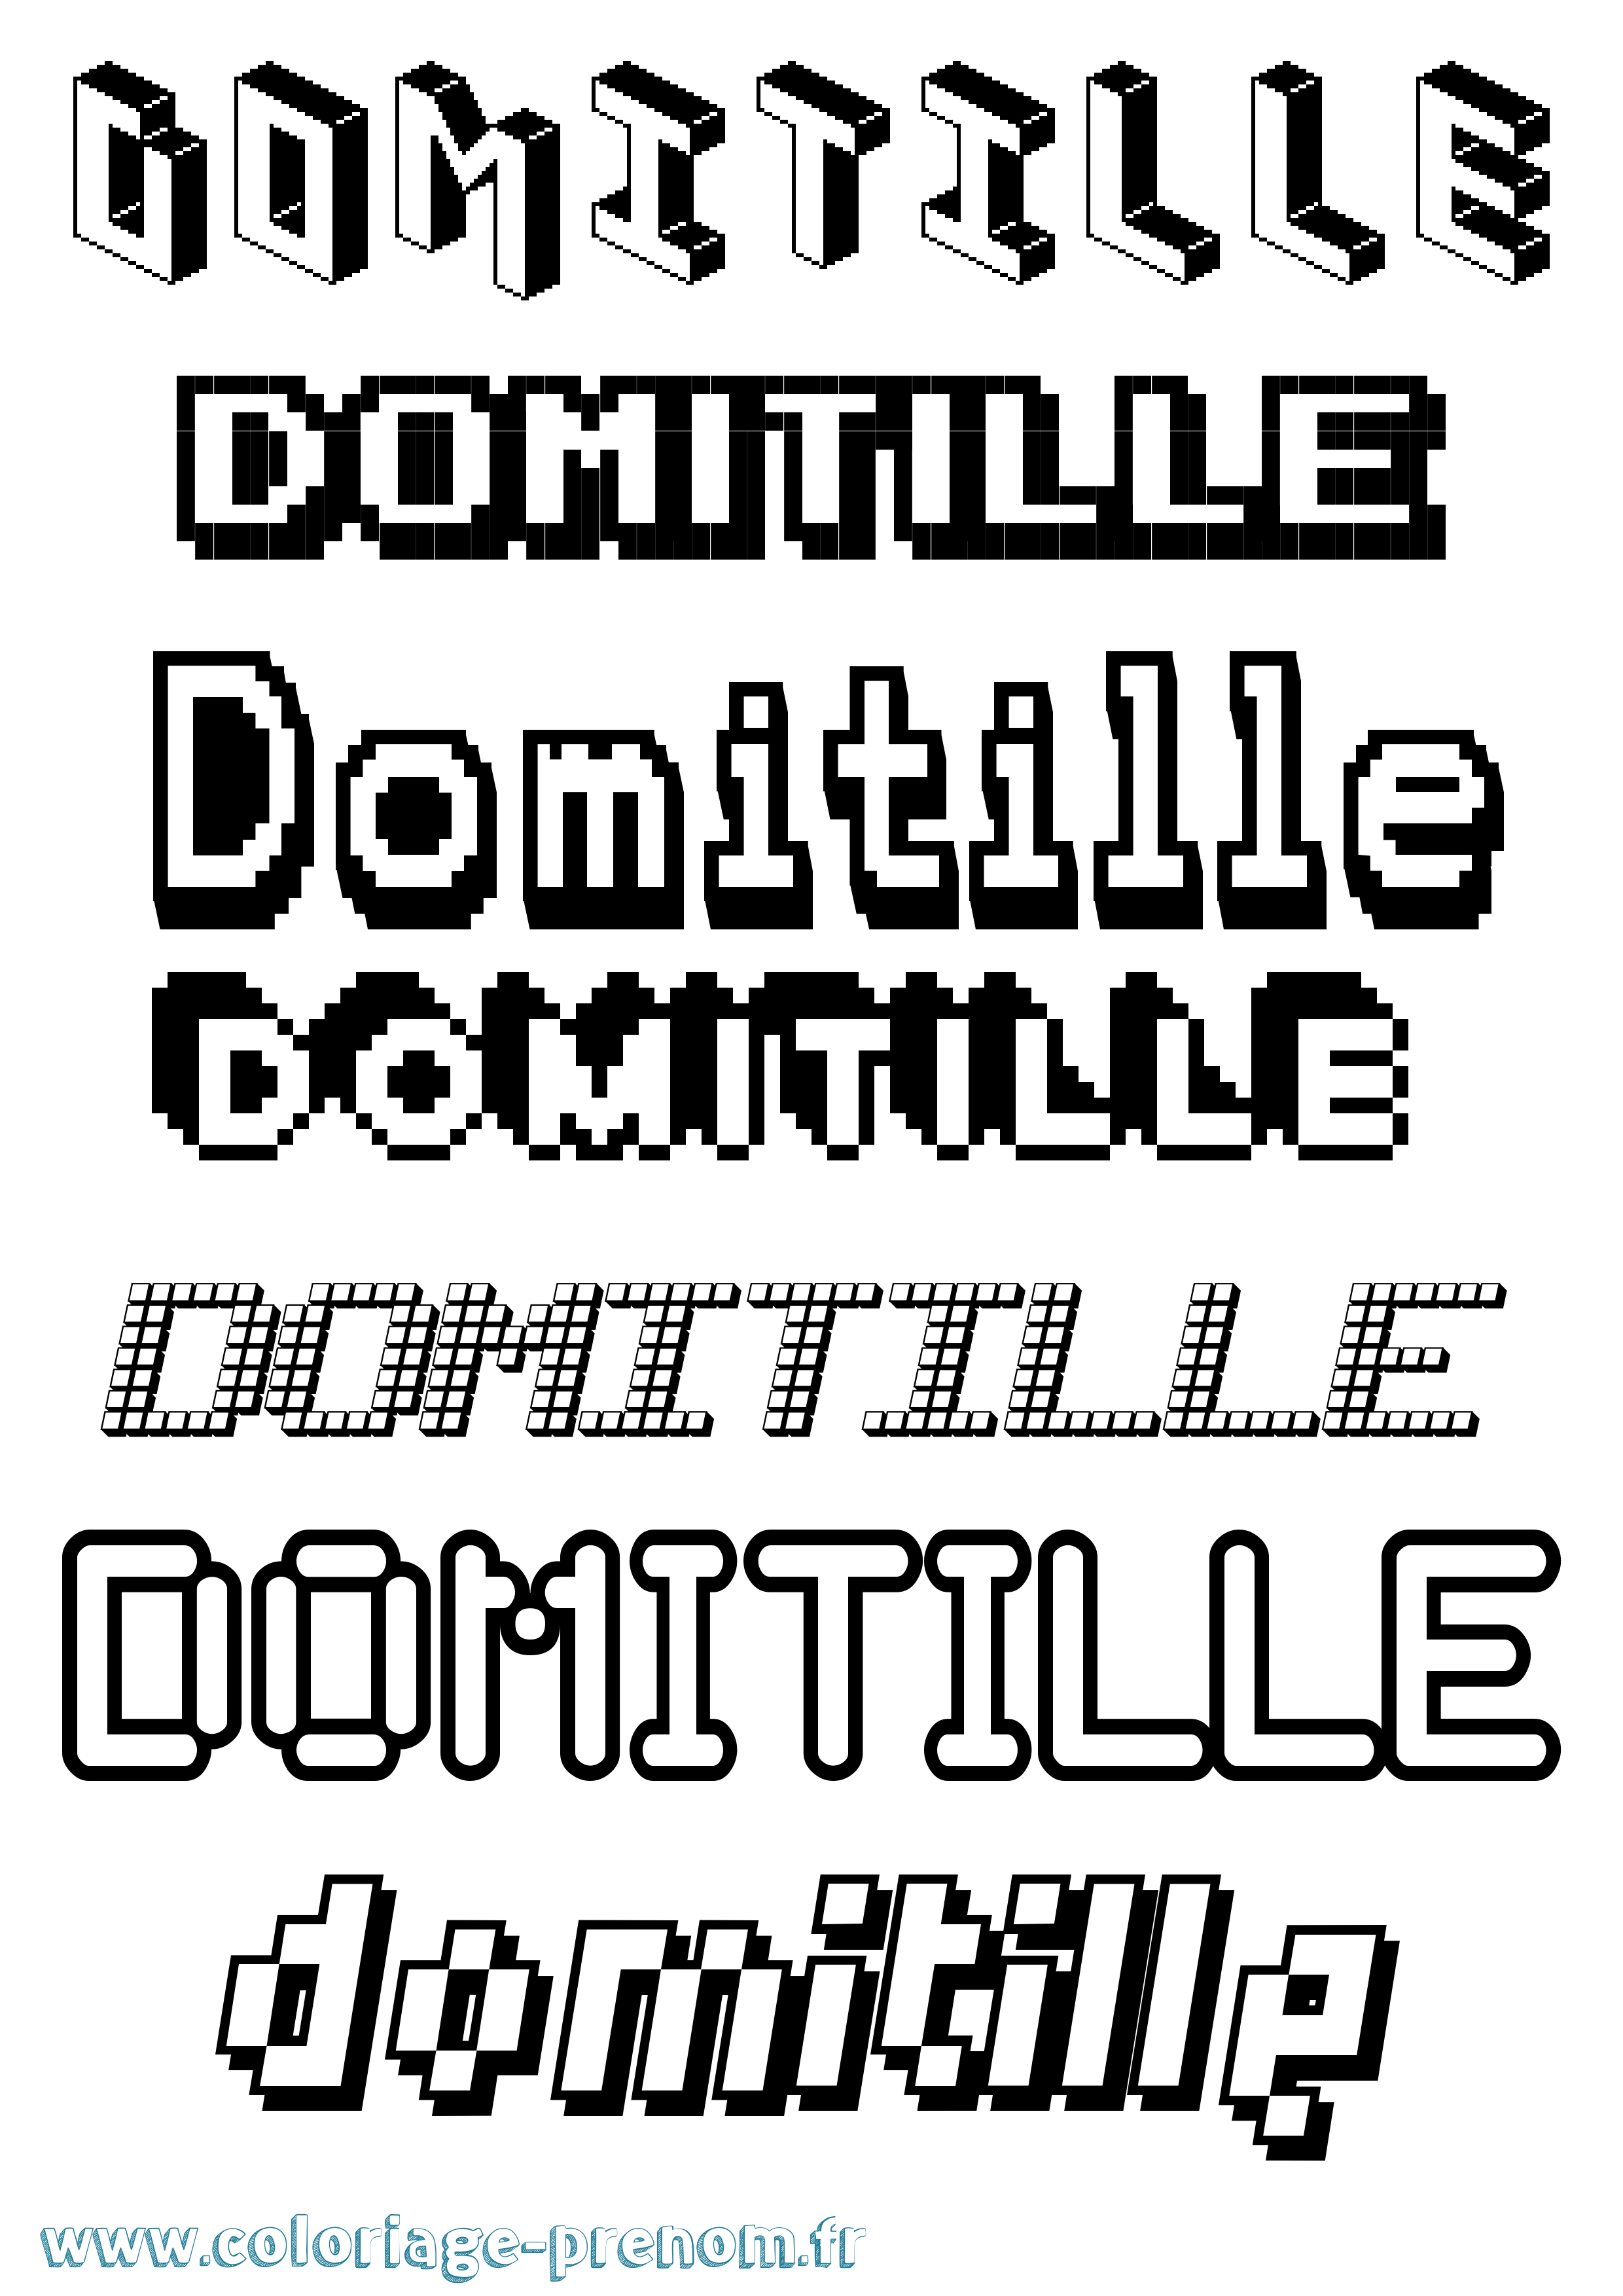 Coloriage prénom Domitille Pixel